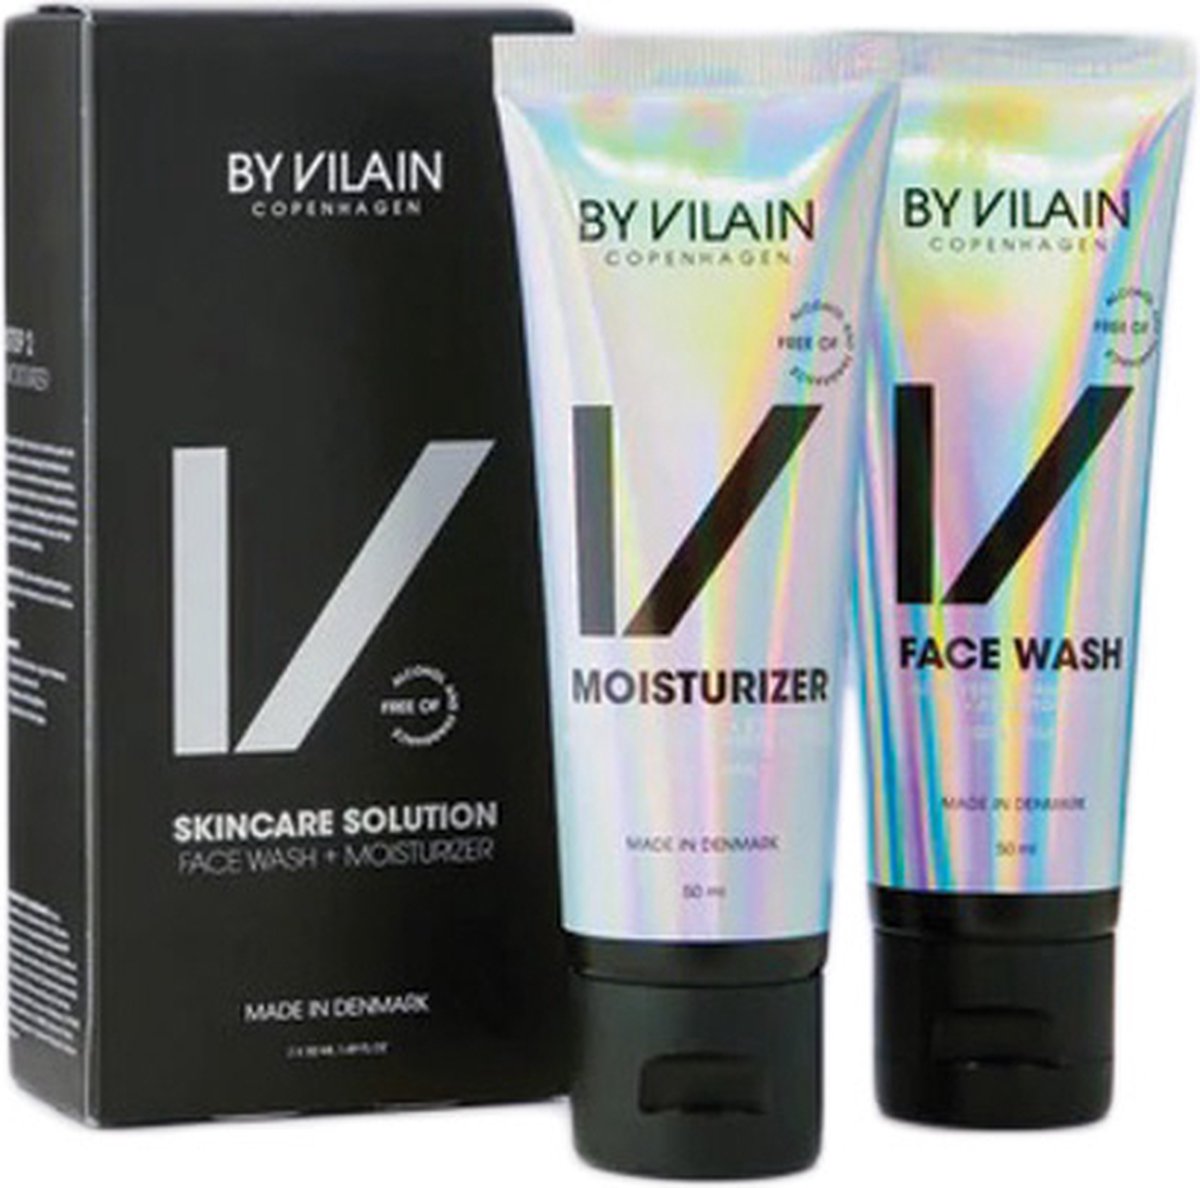 By Vilain Skincare Solution 2-Pack 100 ml.